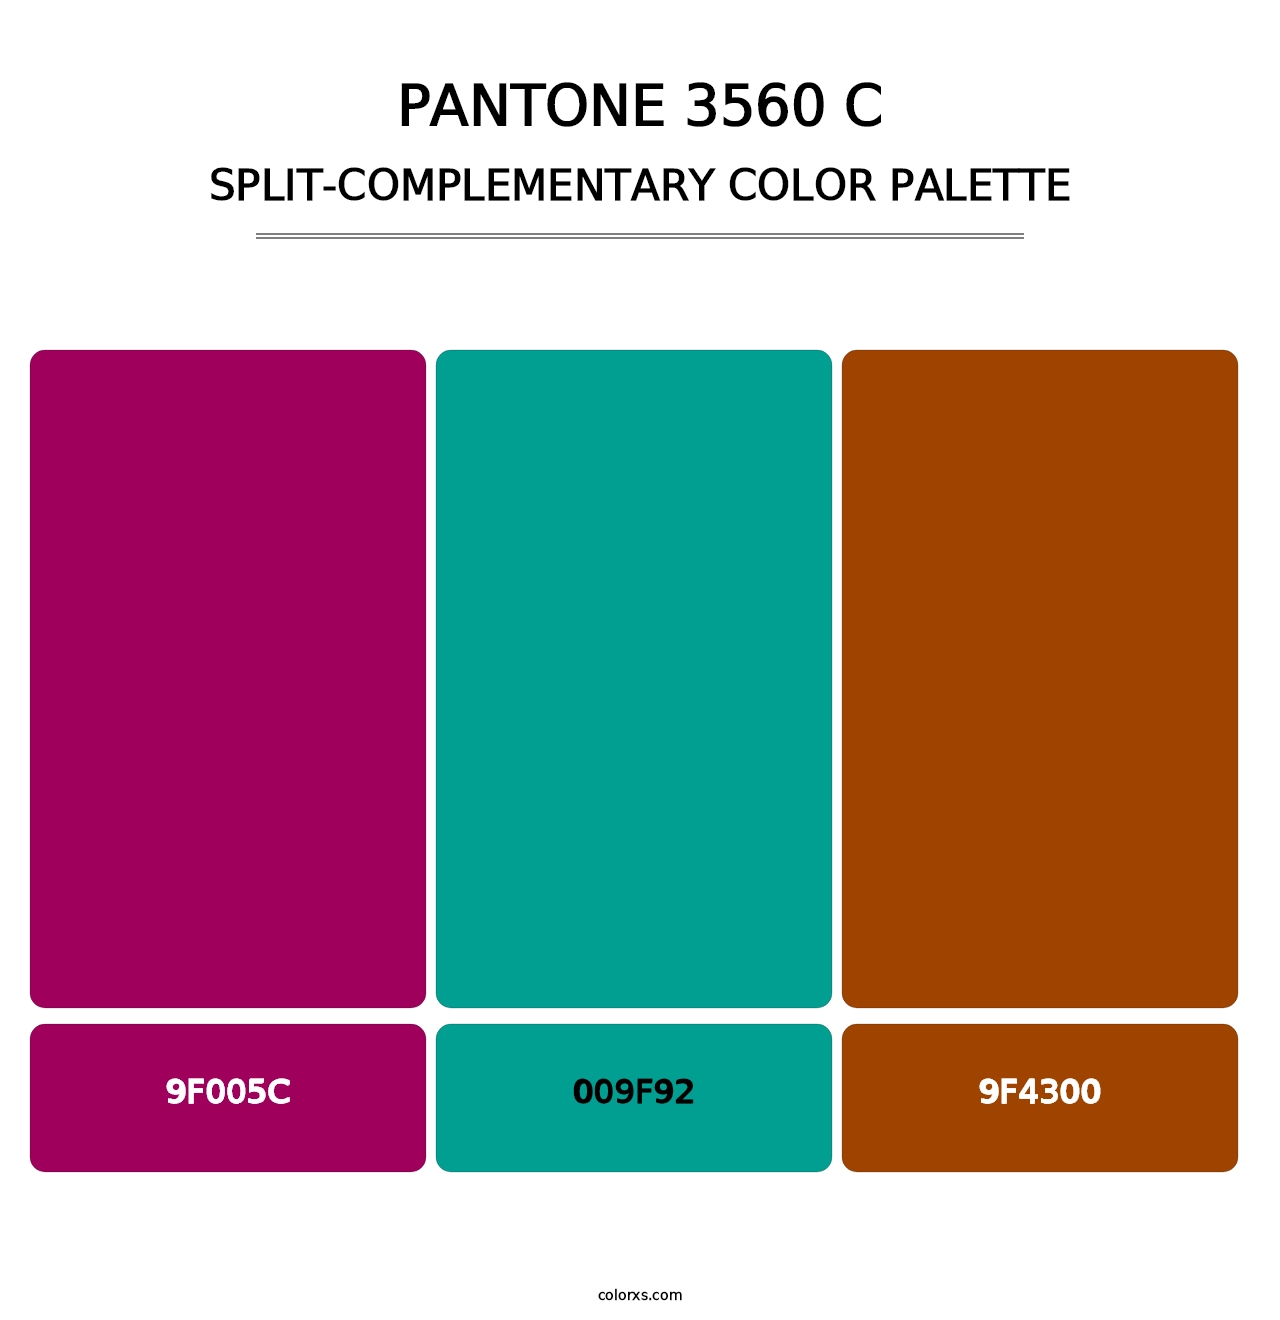 PANTONE 3560 C - Split-Complementary Color Palette